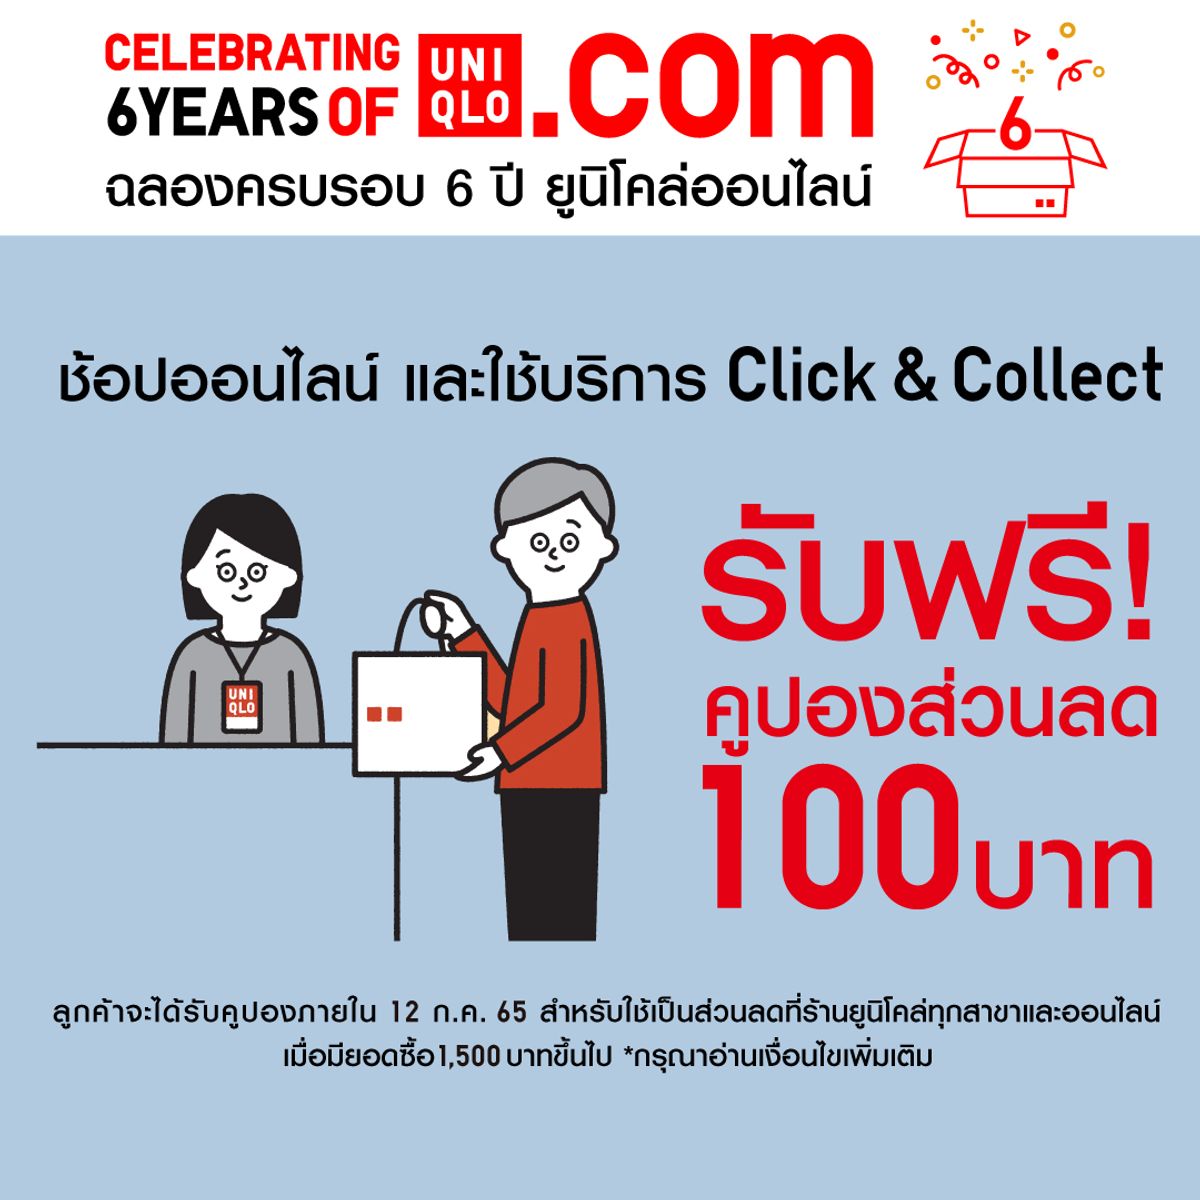 Uniqlo Thailand  ใครทมแผนจะชอปปงวนน อยาลมมาเปนเพอนกบ  uniqlothailand official LINE account แลวรบสวนลด100 บาทไปชอปกนเลยฟรๆ  รายละเอยดเพมเตมท wwwuniqlocomth  คปอง  100บาทนจะใชไดเมอซอสนคาขนตำเพยง1000 บาท โดย 